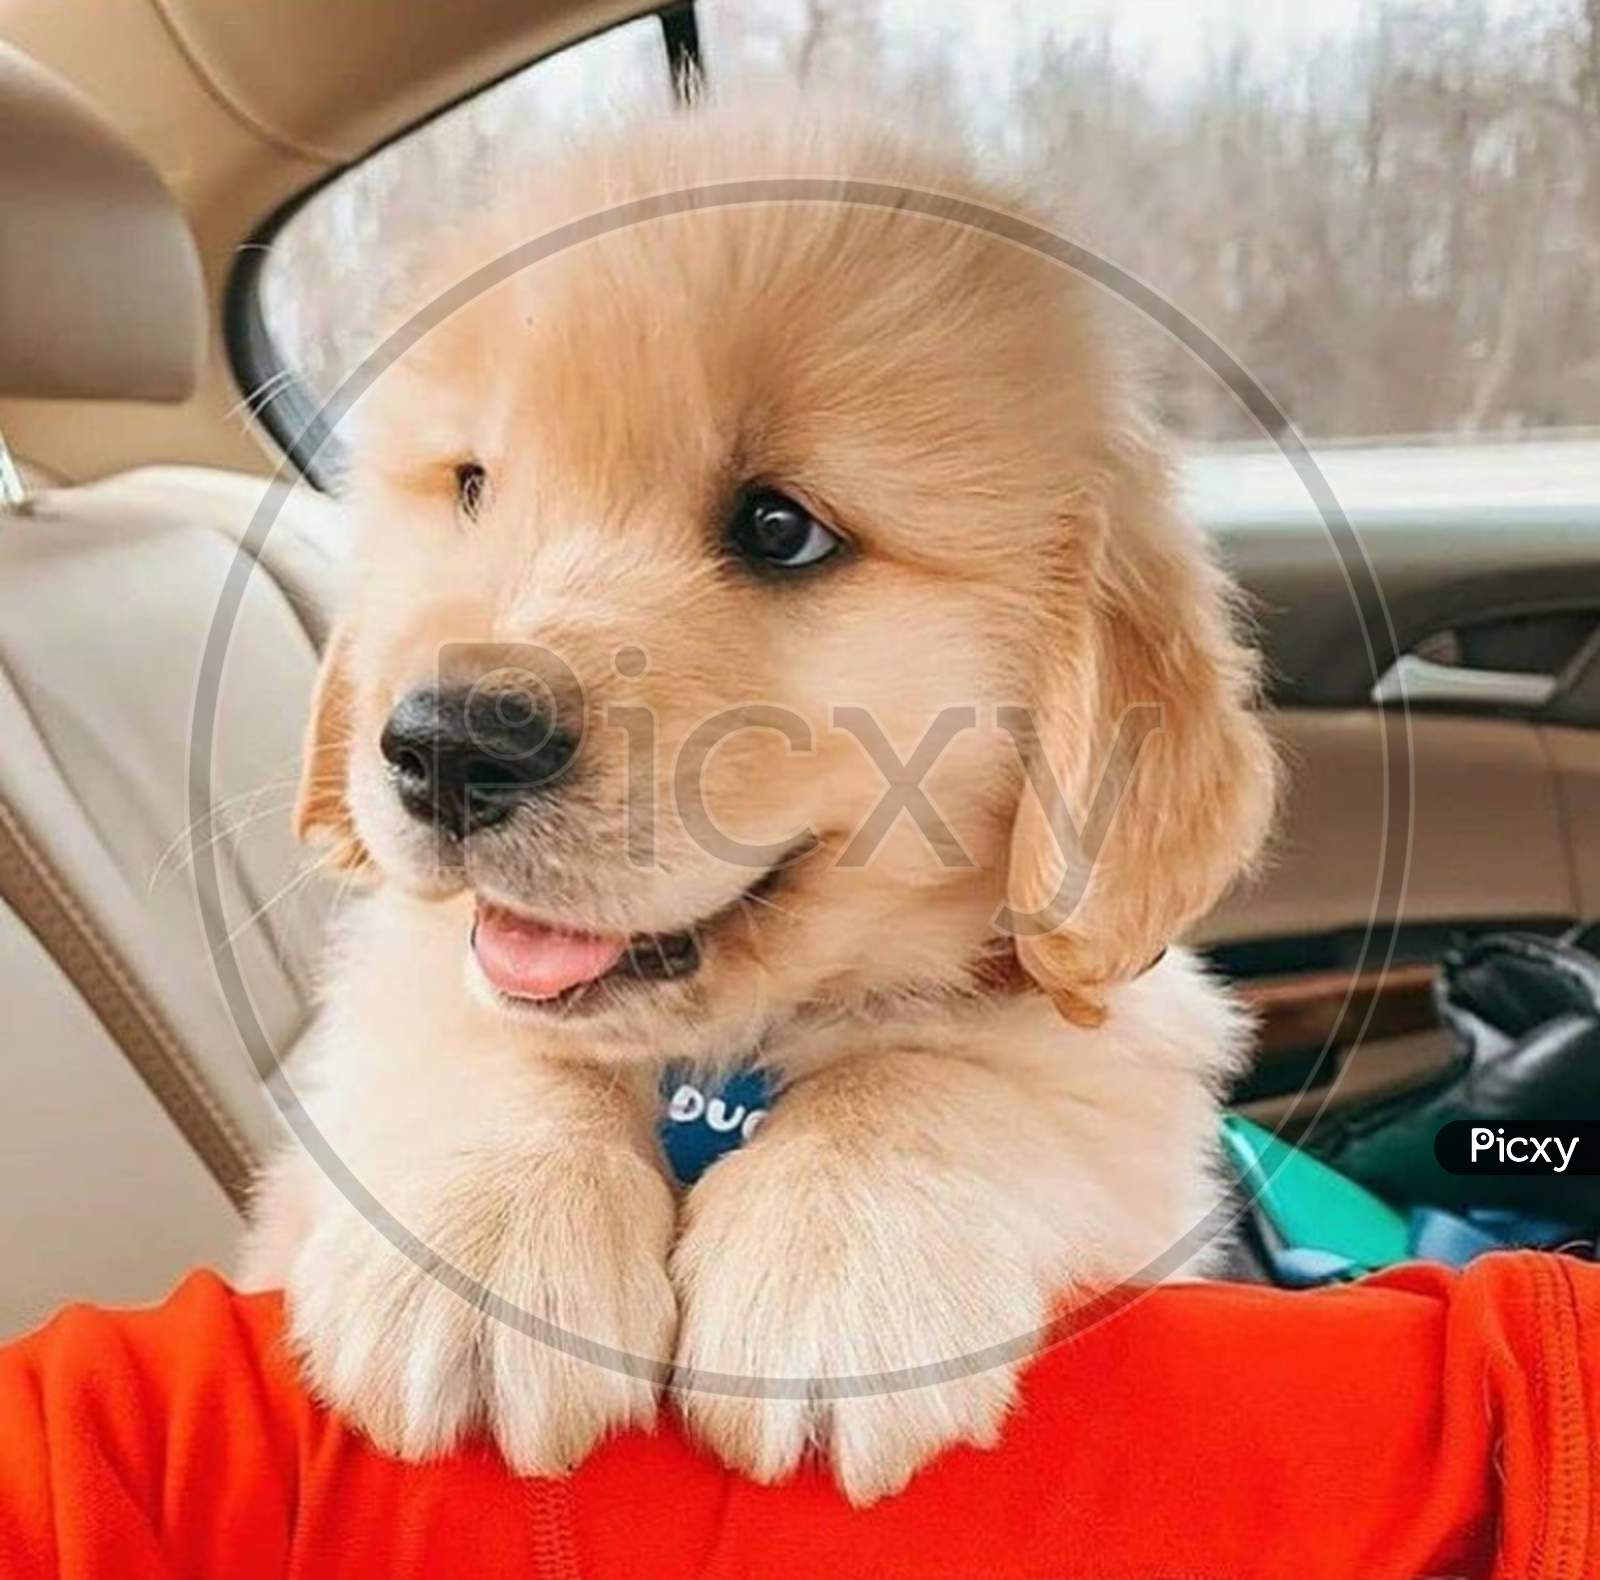 Puppy in a car